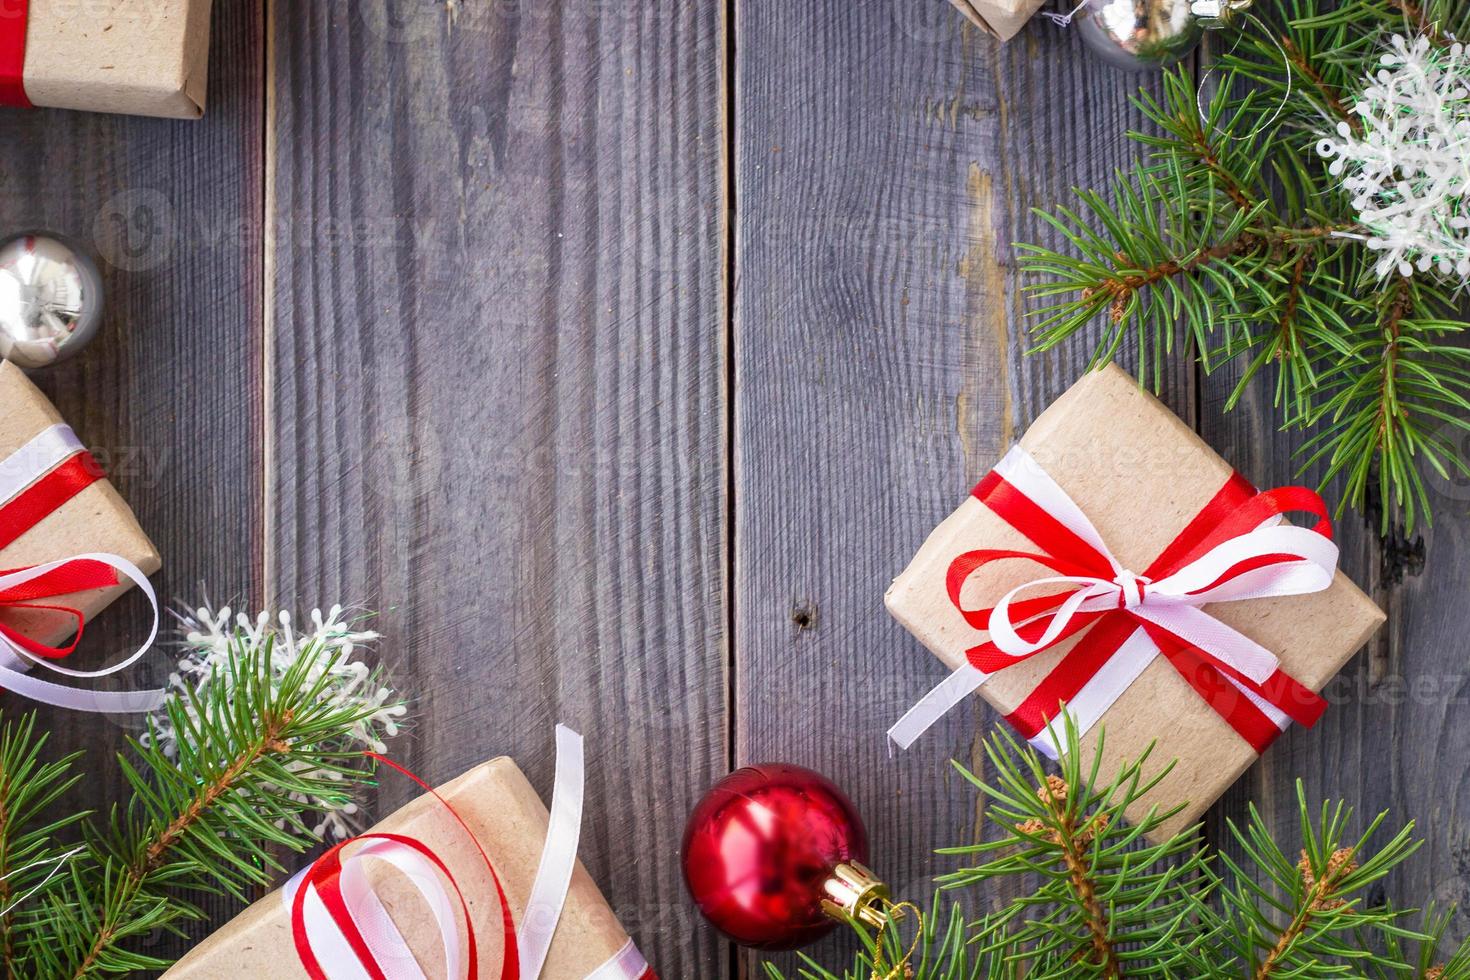 jul bakgrund med gran träd och dekorationer och gåva lådor på trä- styrelse foto